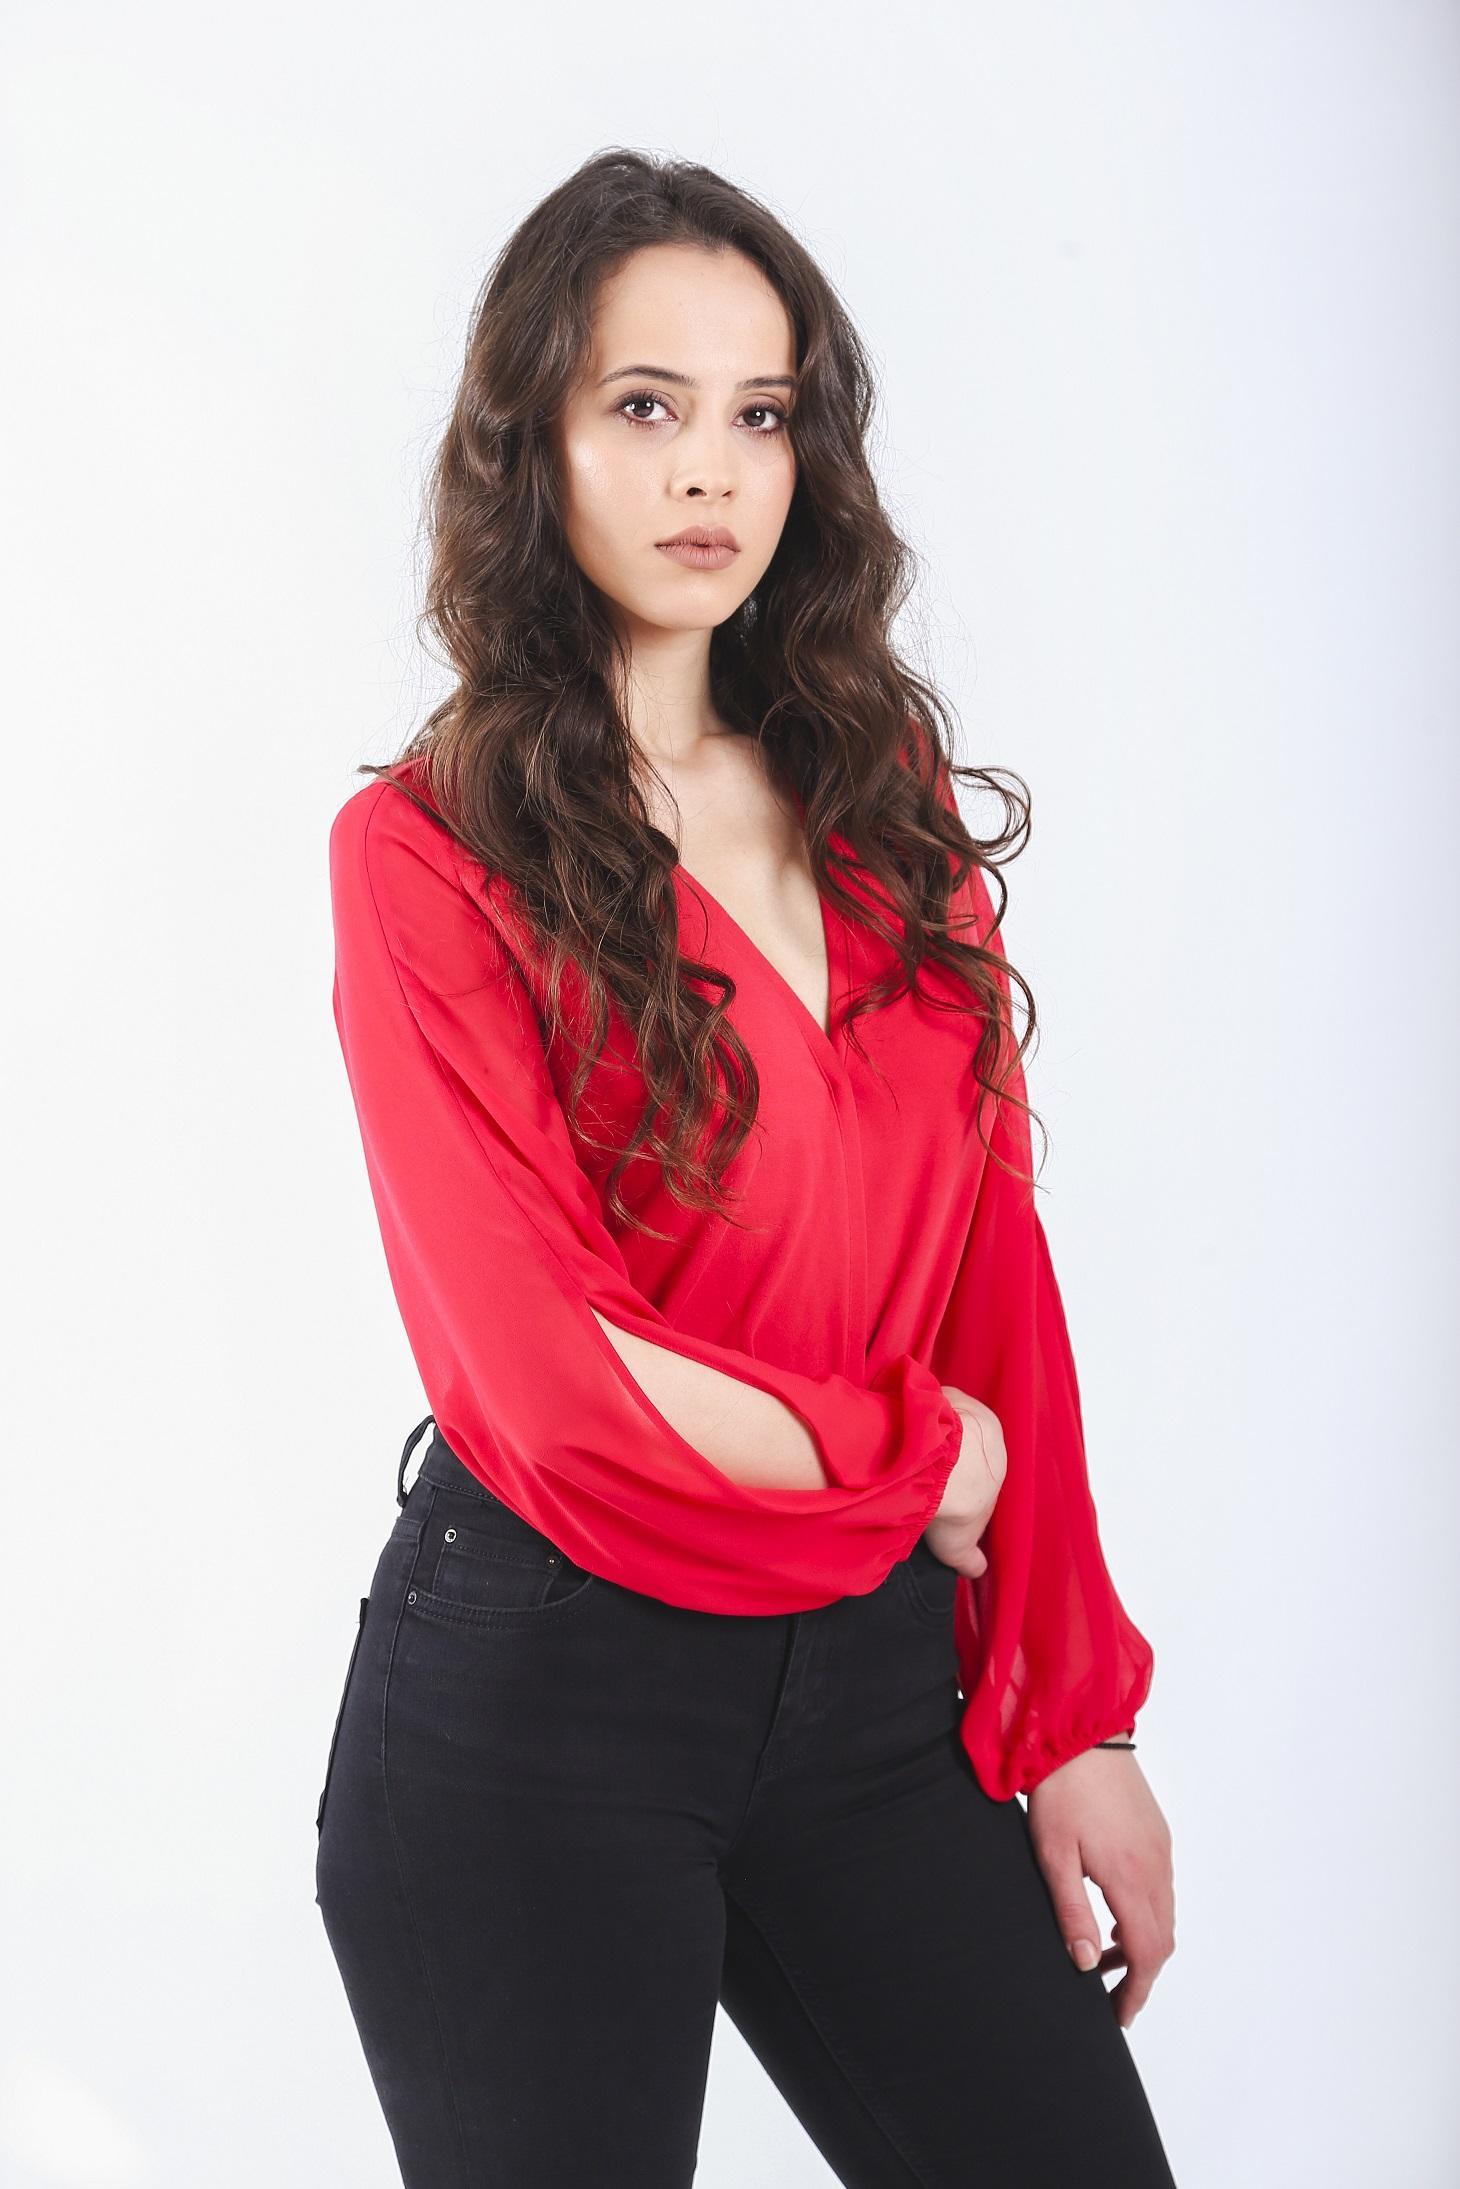 Claudia Vasile va surprinde cu rolul din serialul Adela